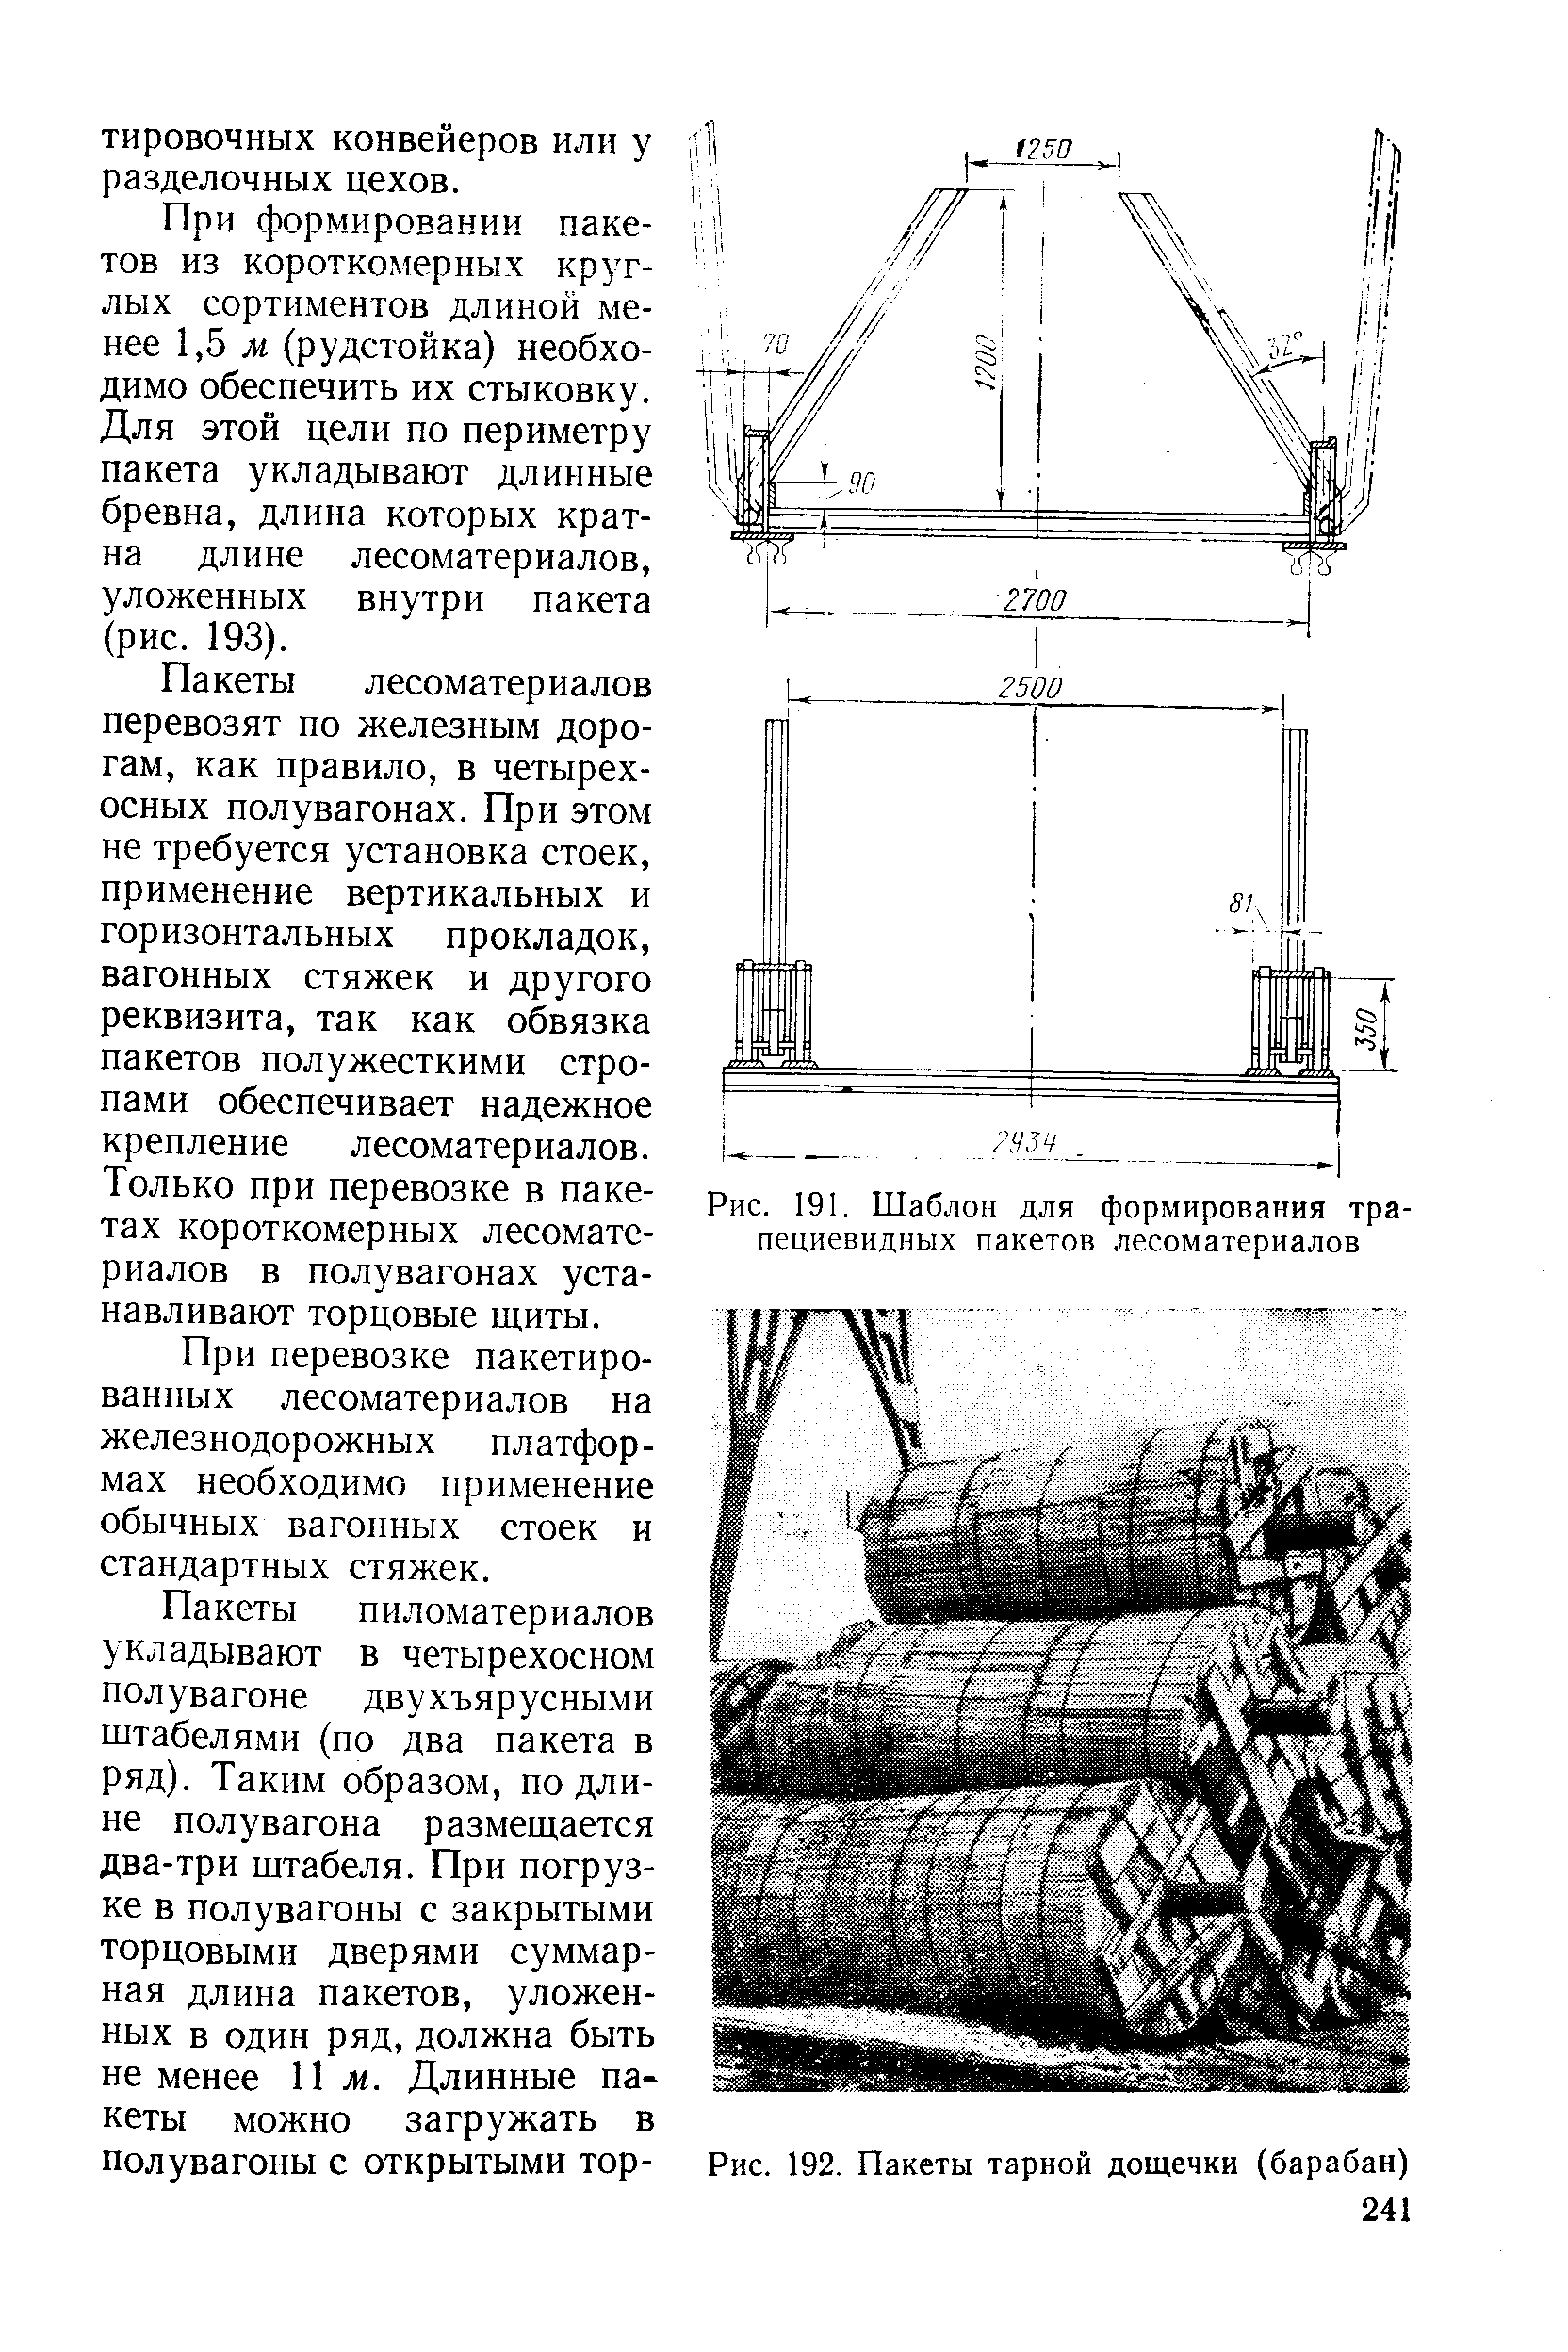 Рис. 191, Шаблон для формирования трапециевидных пакетов лесоматериалов
